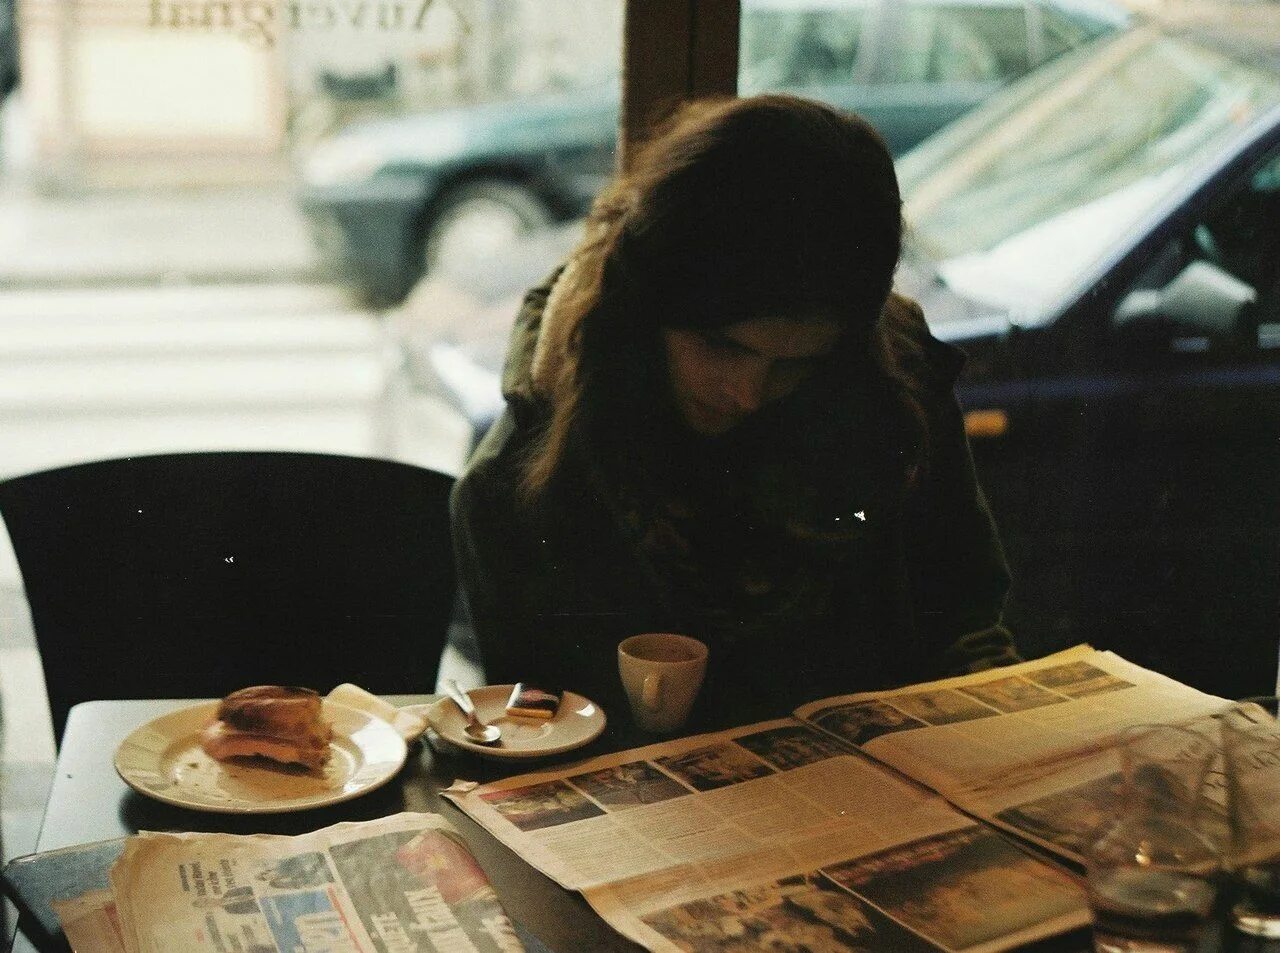 За столом фото без лиц. Девушка в кафе. Девушка в кафе со спины. Девушка грустит в кафе. Девушки в кафе за столом.